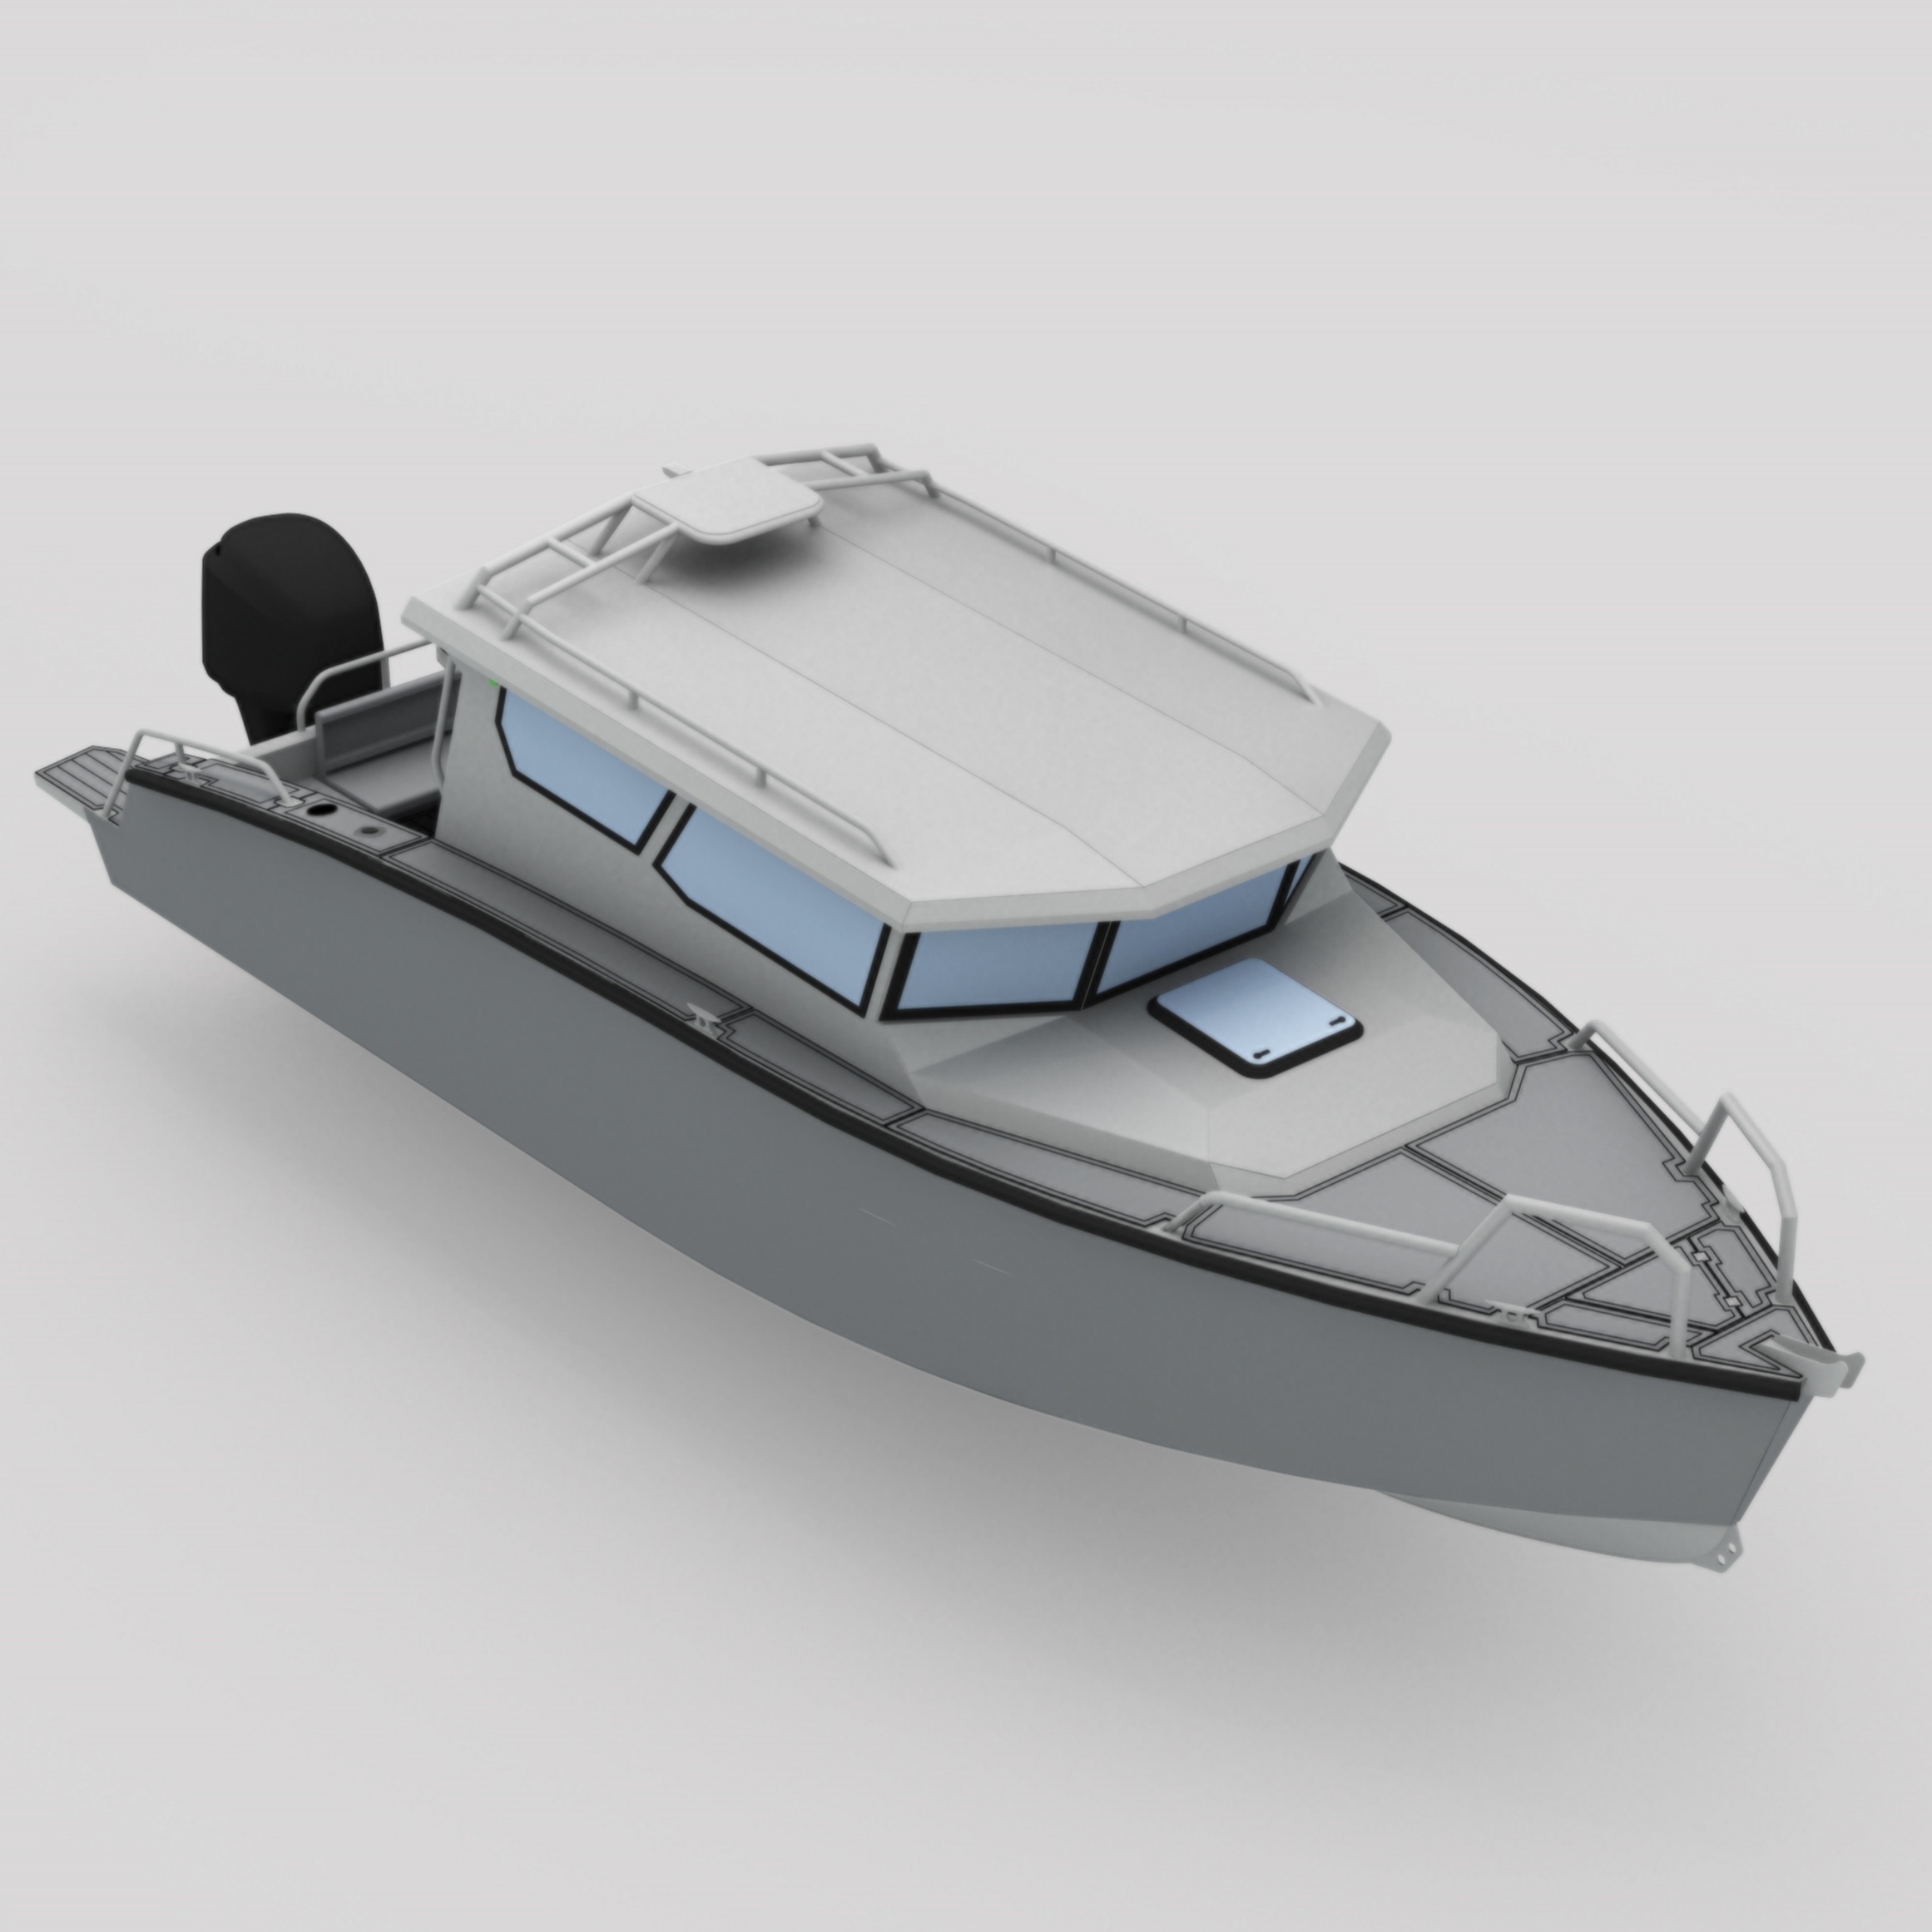 Bladecraft 8,4 m aluminium boot voor visserssportpatrouilles